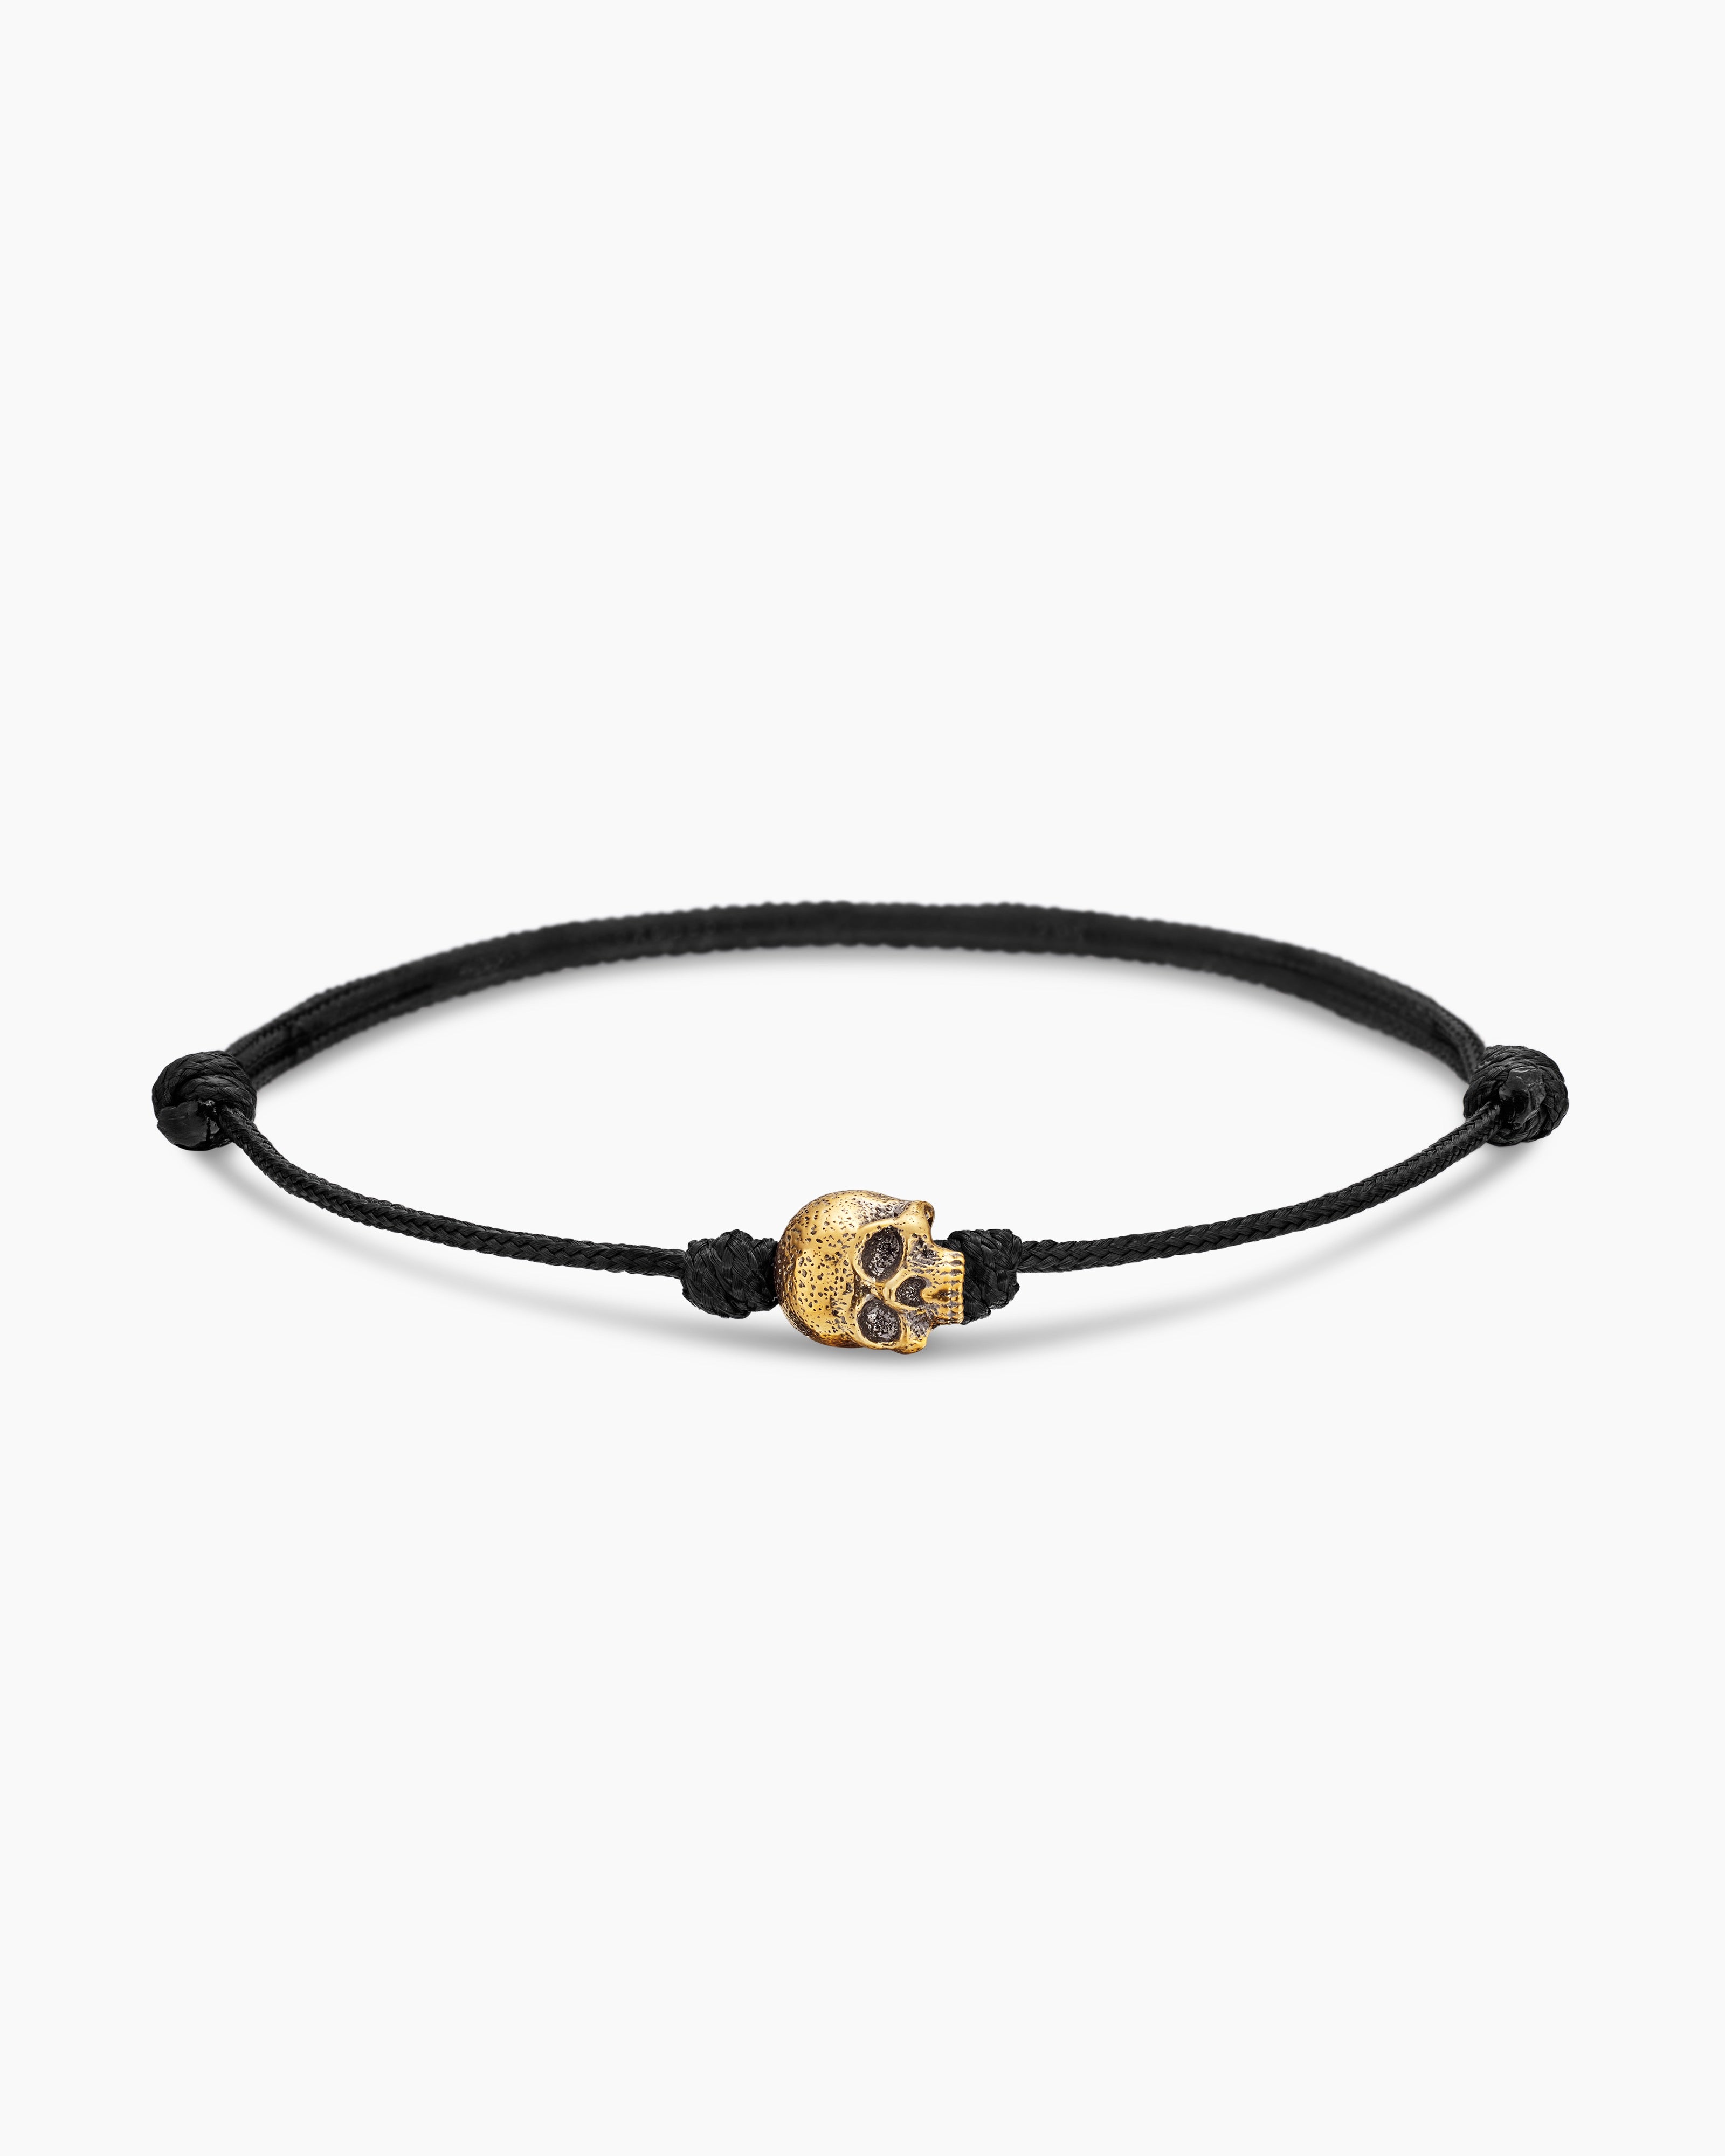 David Yurman Men's Skull Black Cord Bracelet with 18K Yellow Gold - Medium